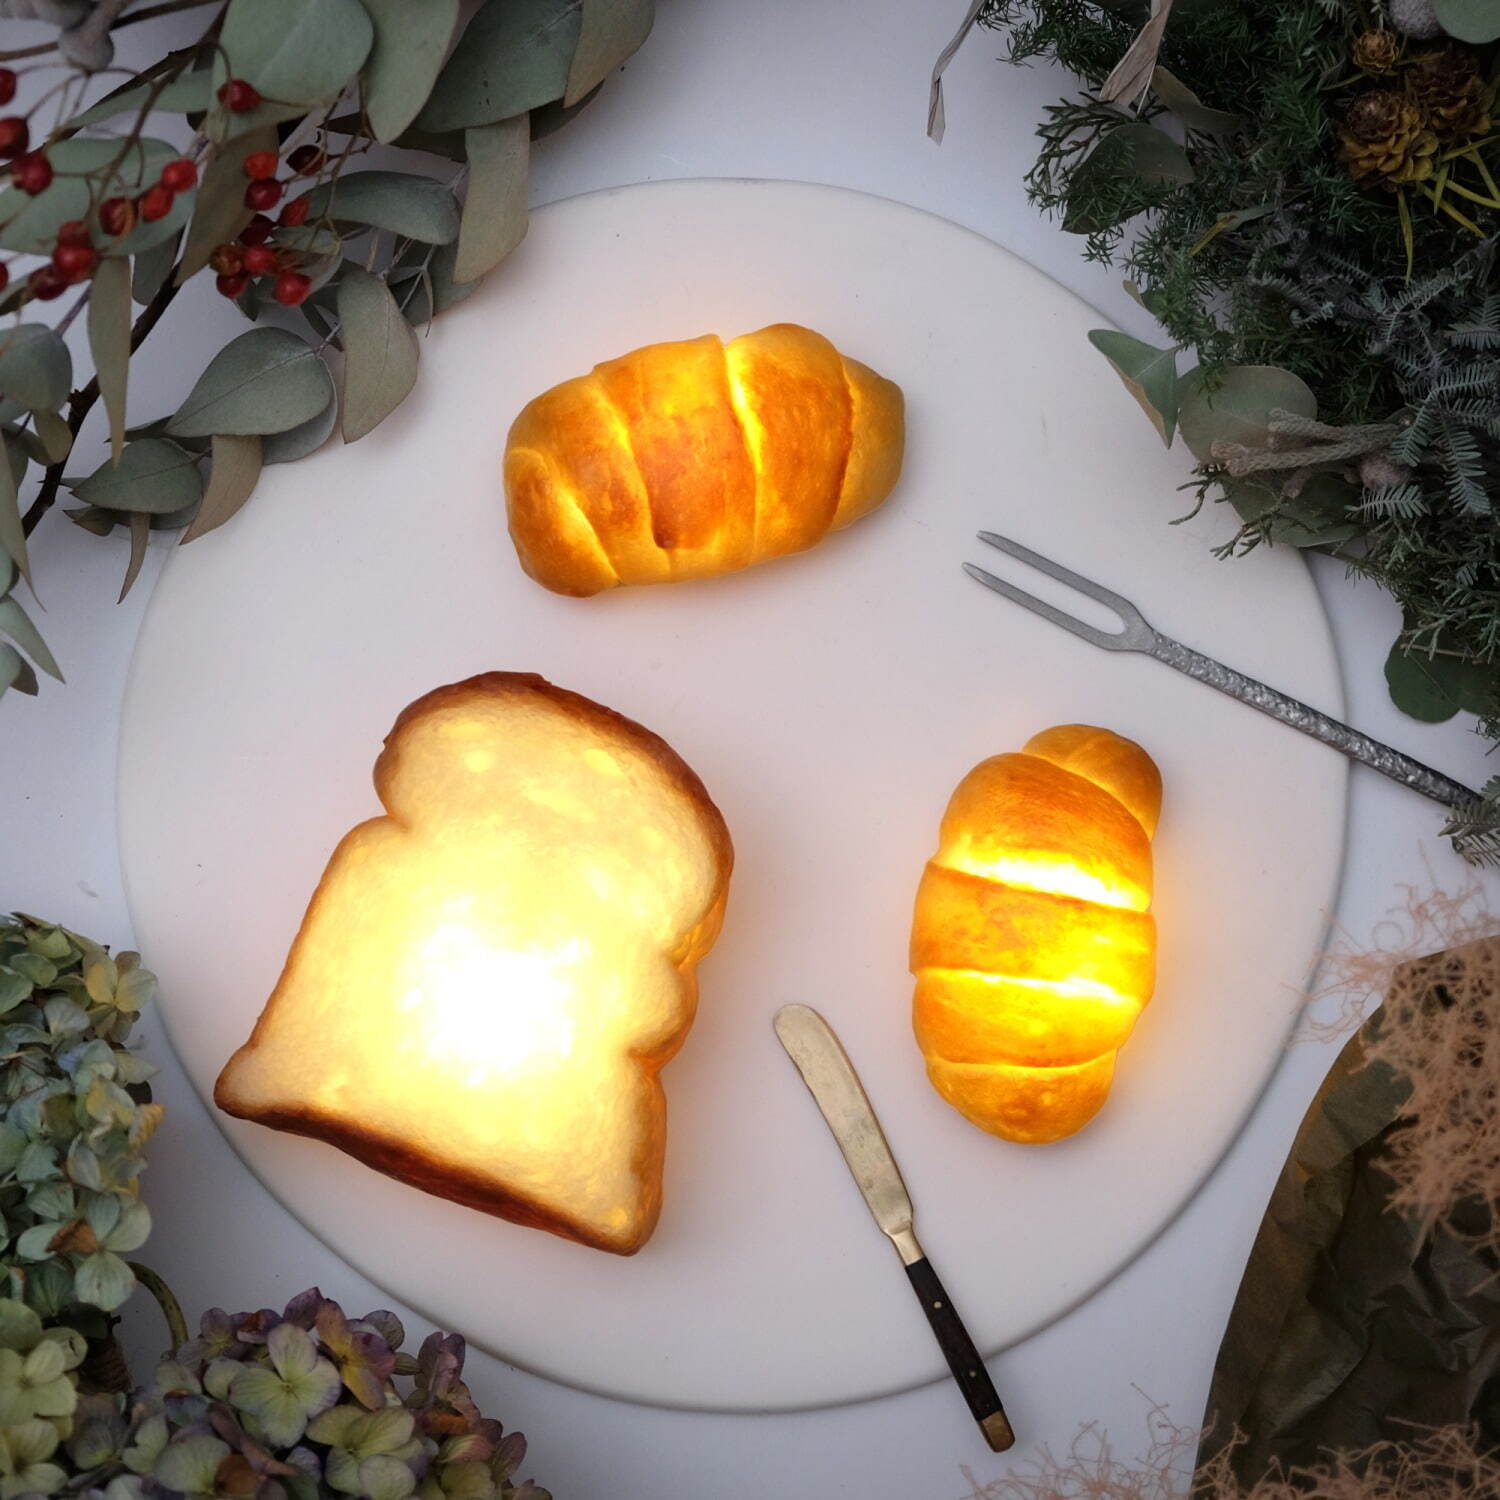 ・タイニーロール Bread Lamp(電池タイプ) LEDライト 各5,990円(税込)
・トースト(山食) Bread Lamp(電池タイプ) LEDライト 7,480円(税込)